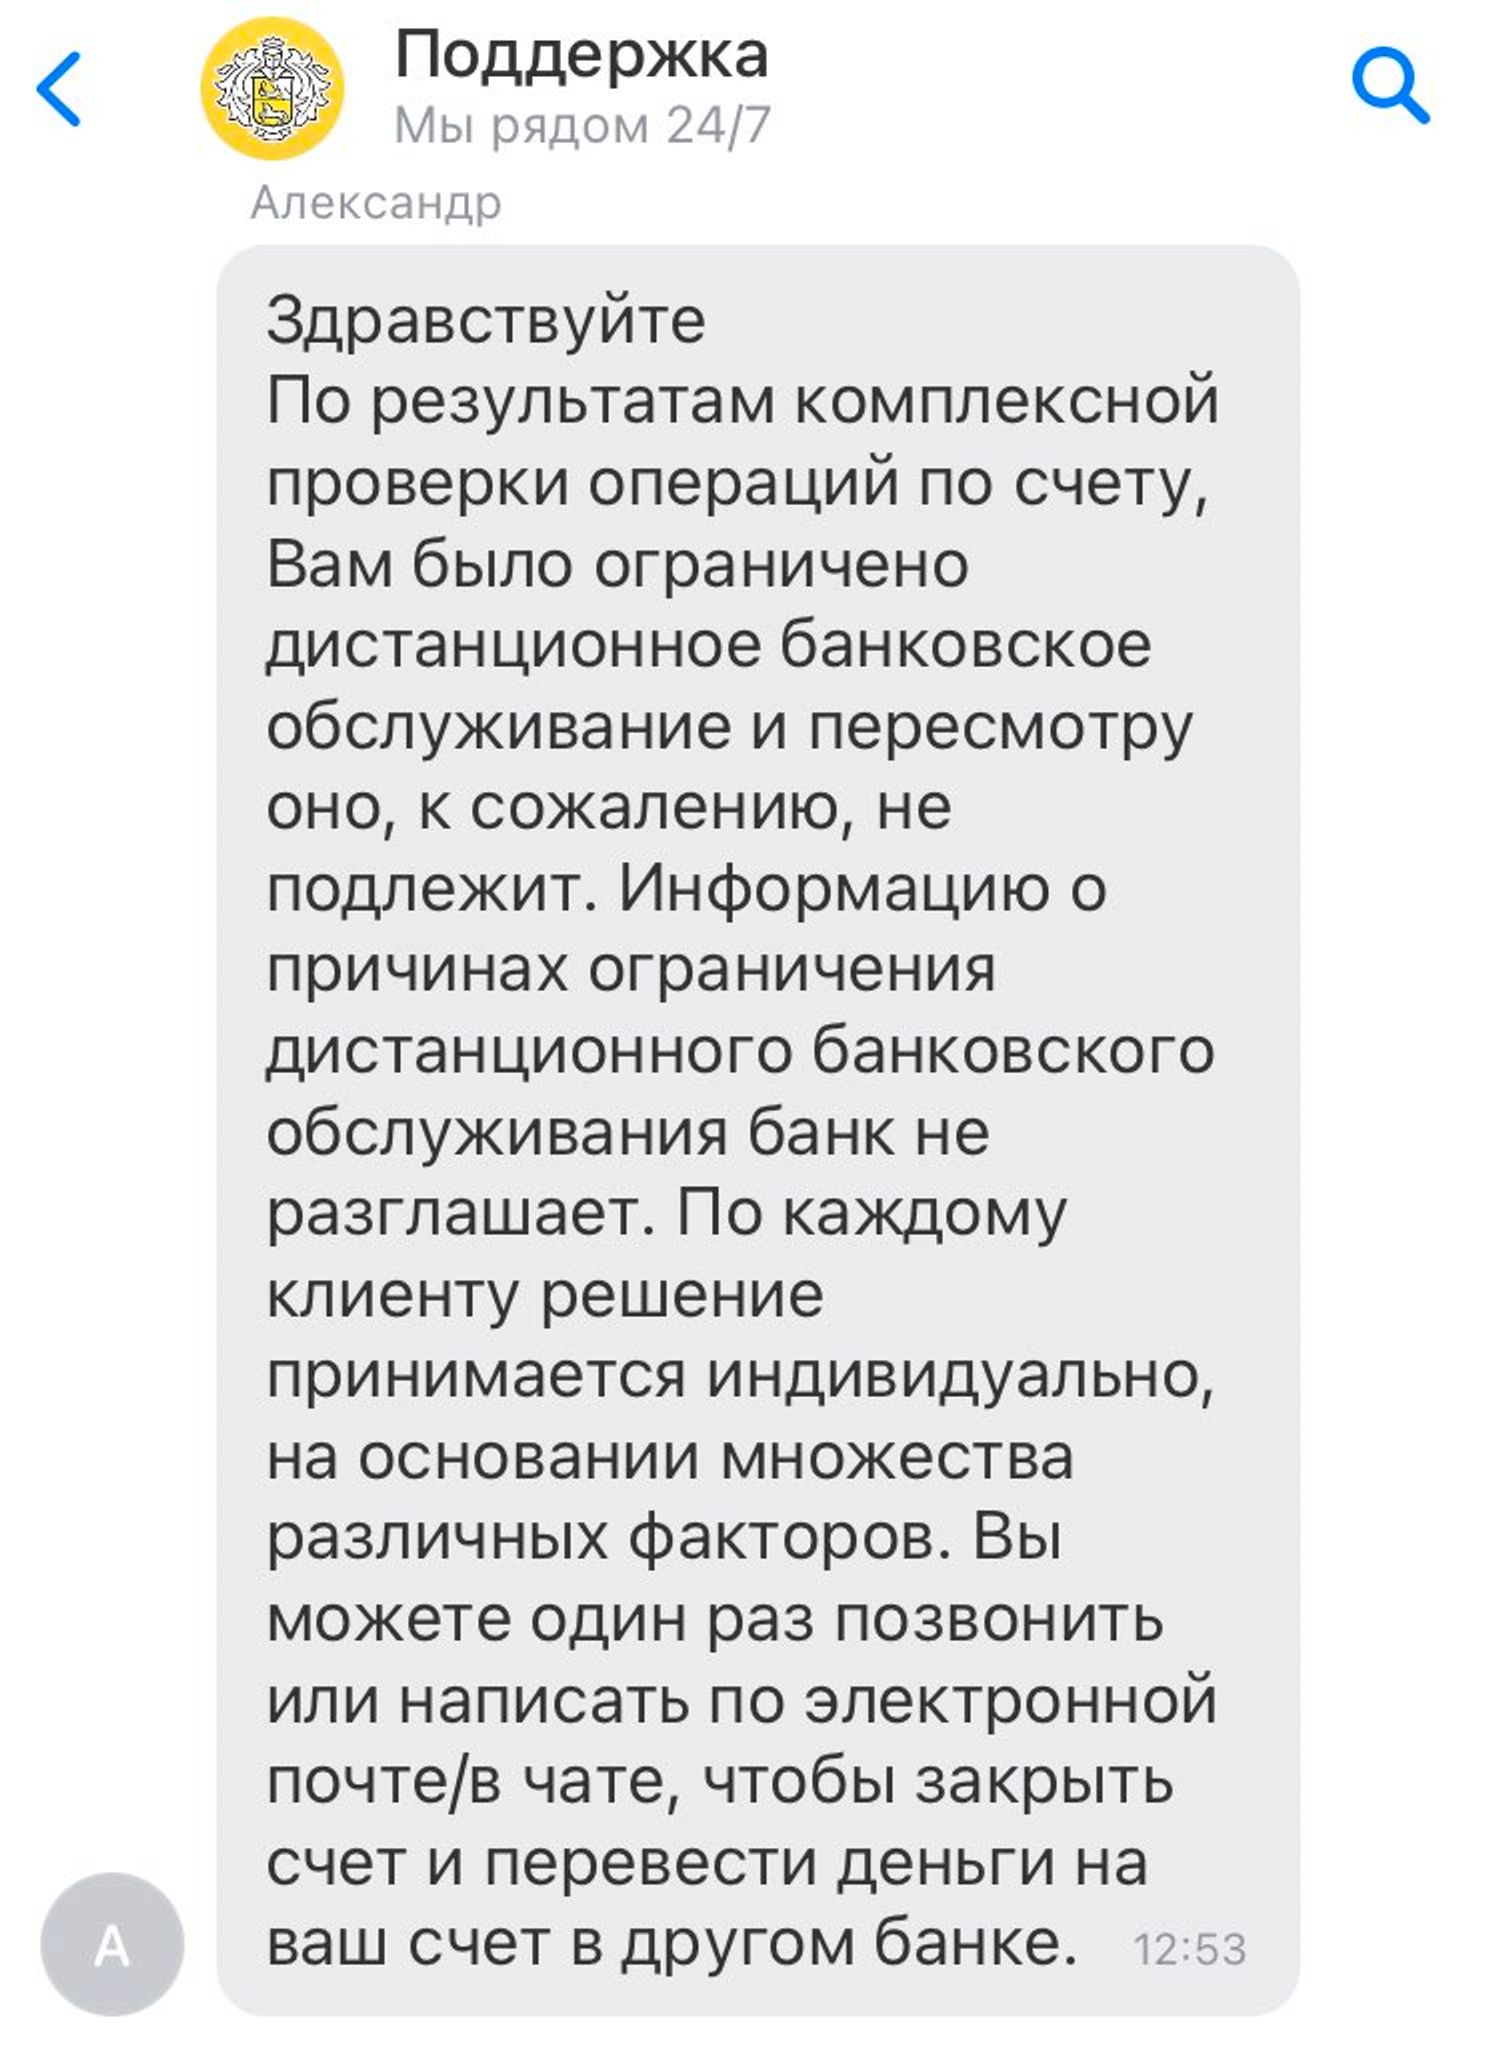 «Решение пересмотру не подлежит» — «Тинькофф-банк» заблокировал счет журналиста Андрея Захарова без объяснения причин